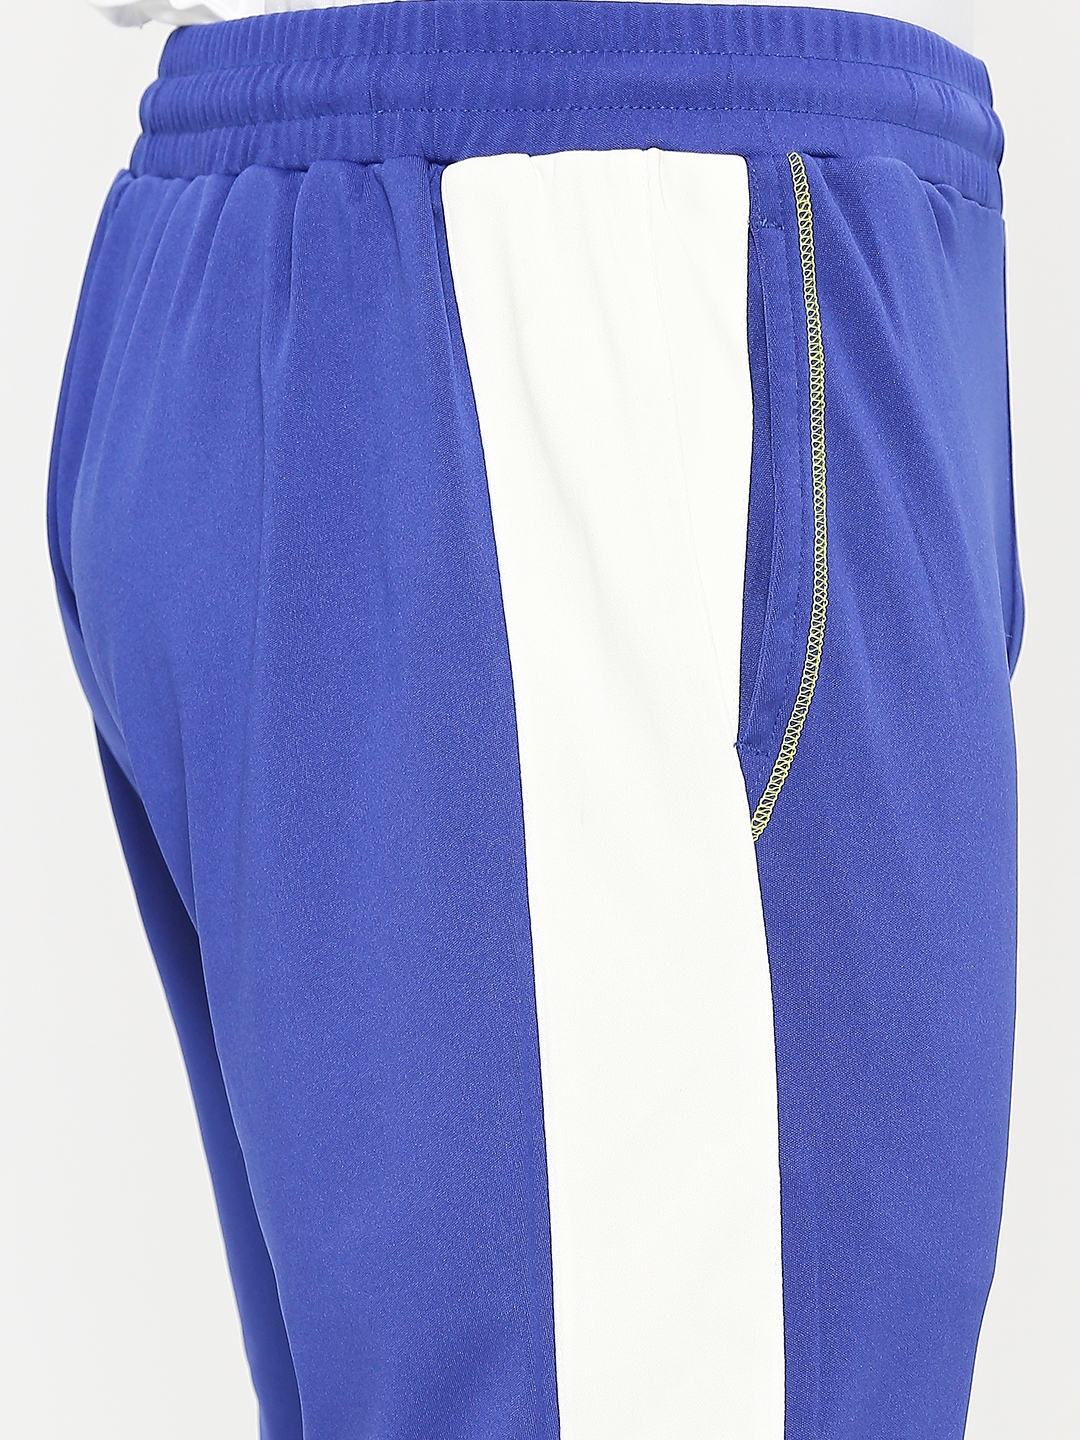 FITZ | Men's Slim Fit Blue Cotton Blend Casual Joogers 4